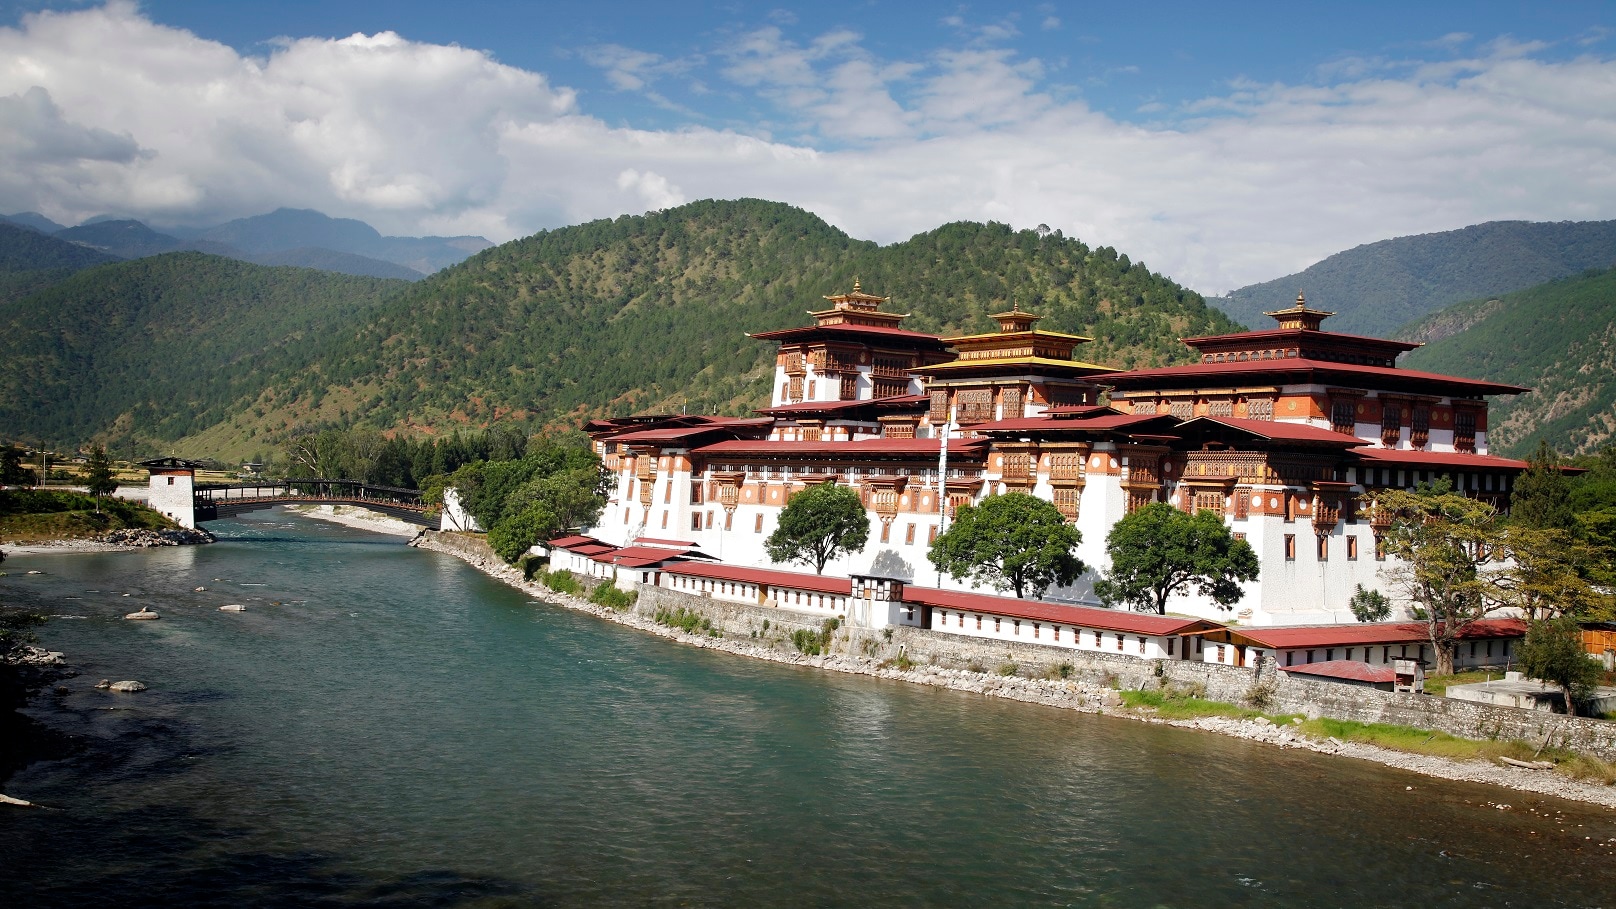 Visit The Palace of Great Happiness Pungtang Dewa Chhenbi Phodrang